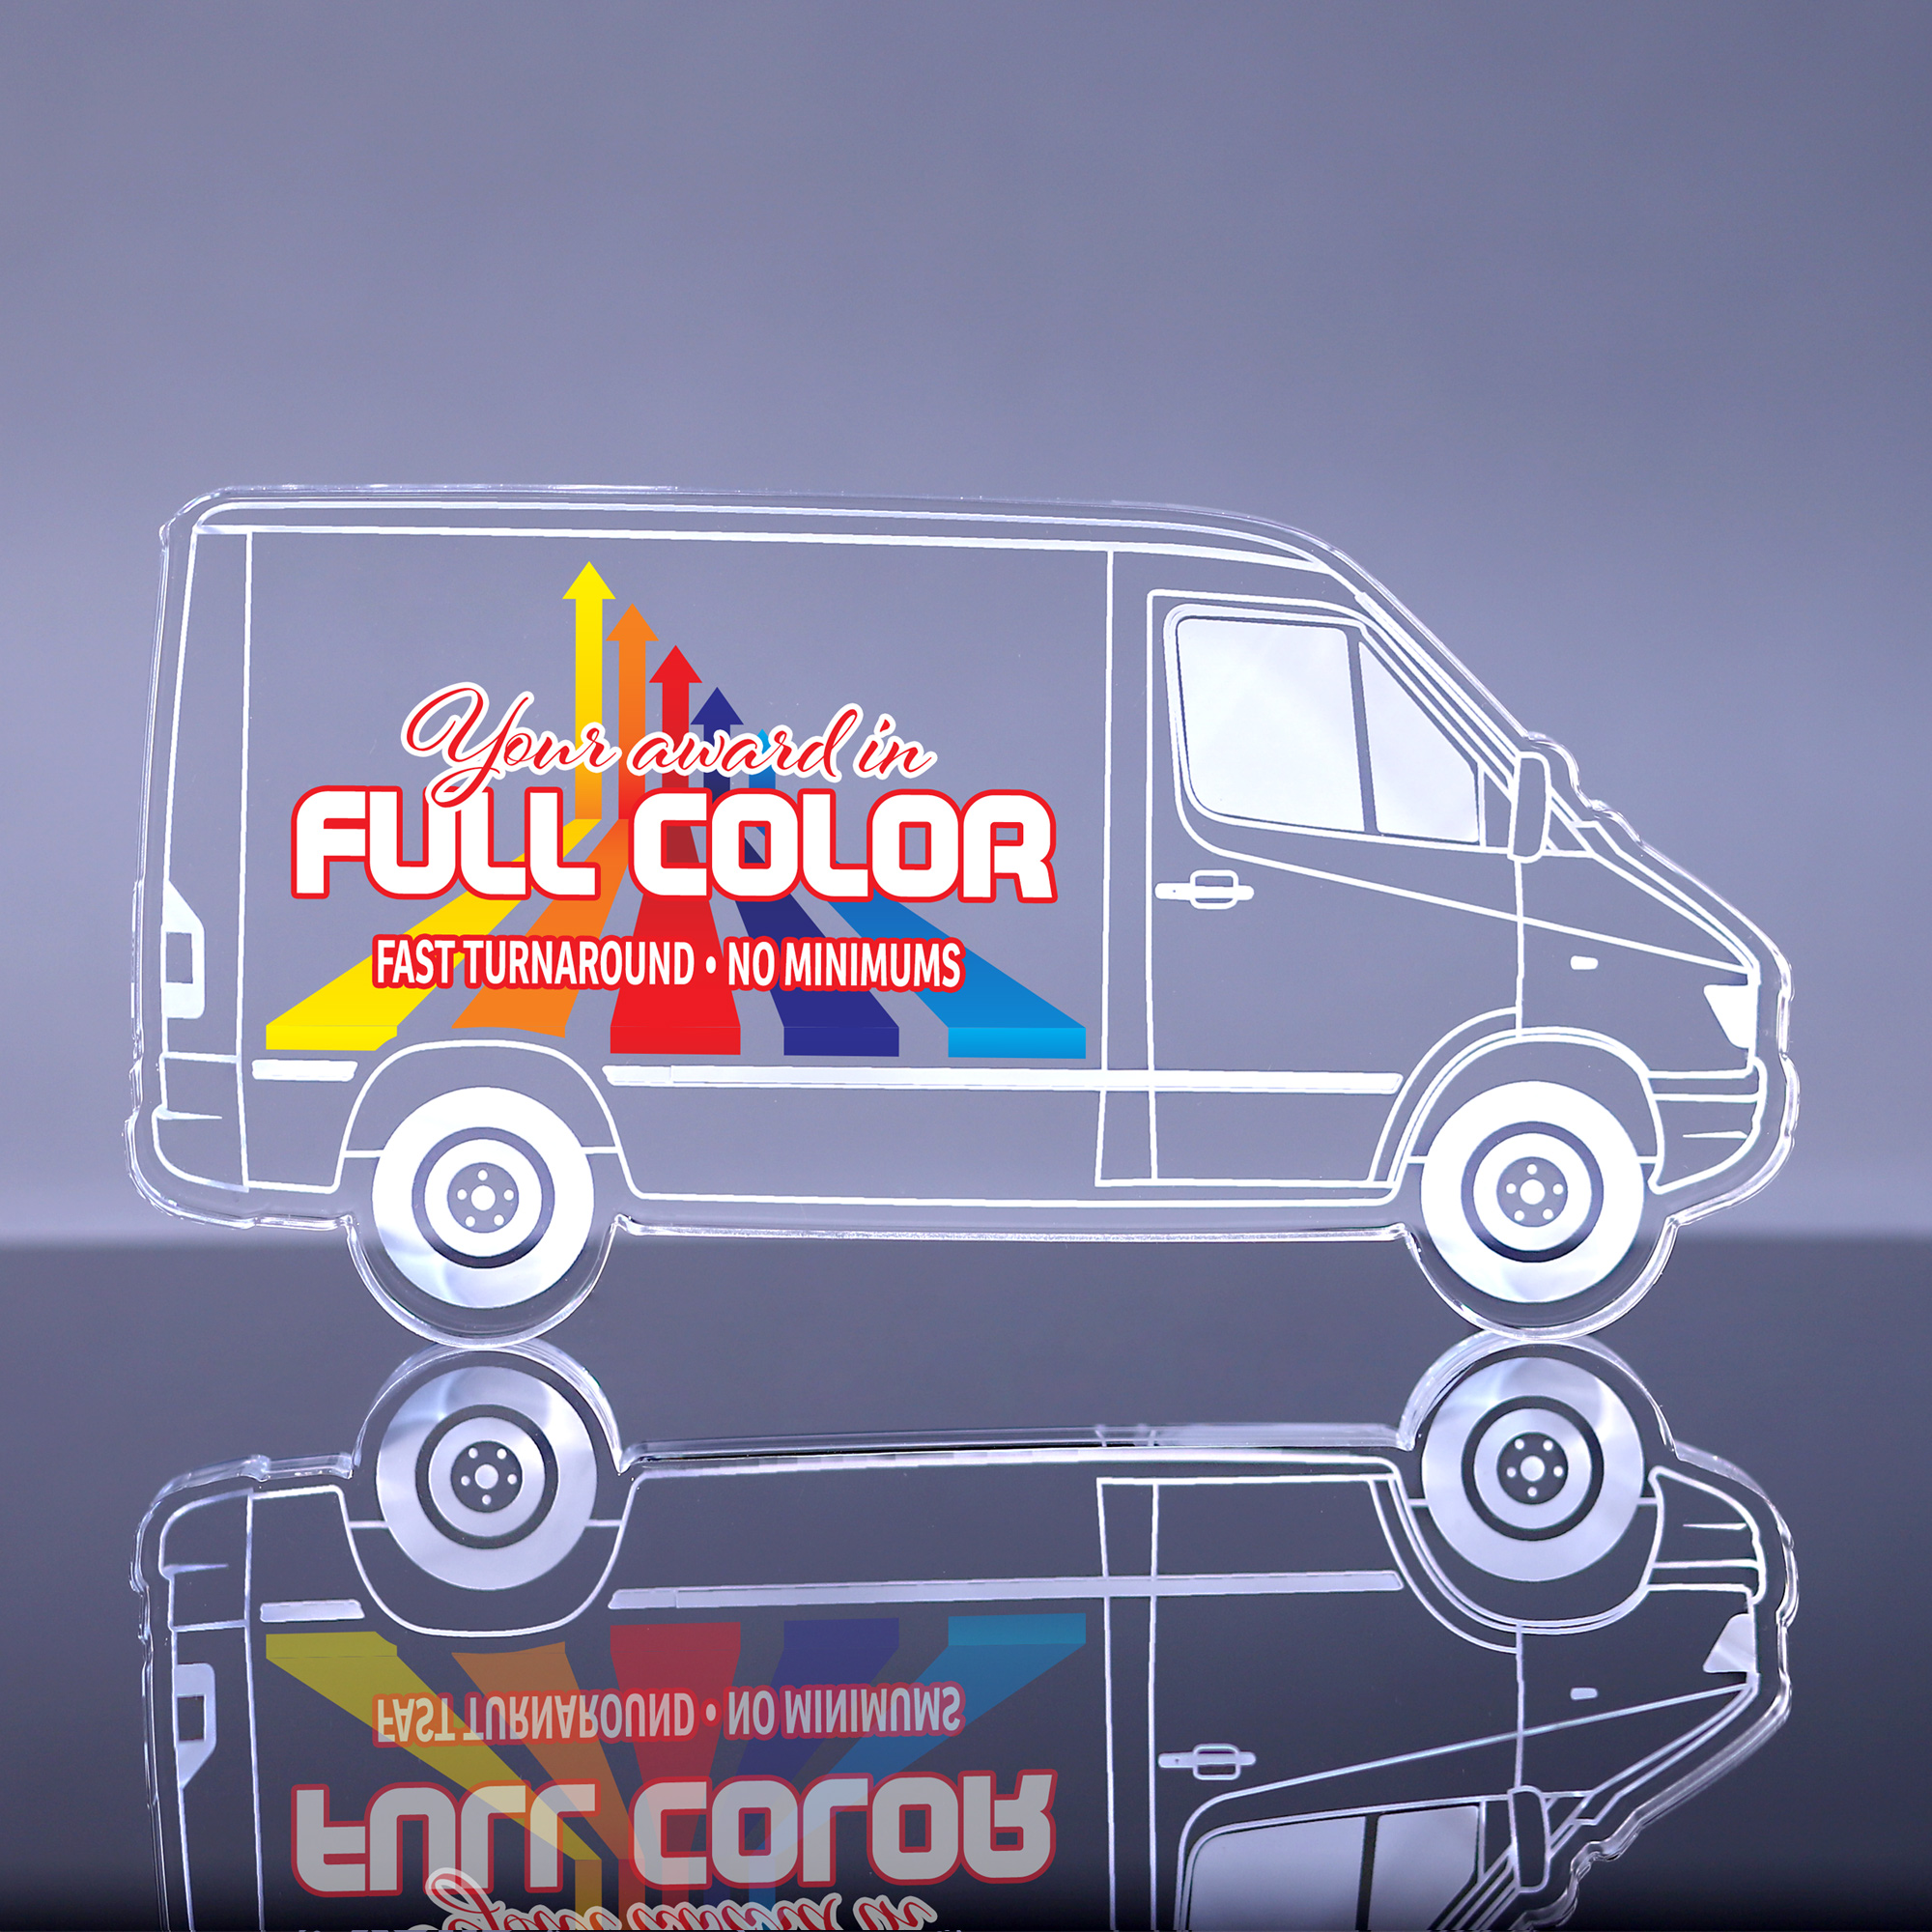 1 inch Thick Acrylic Cargo Van Award - 8.5 inch Color